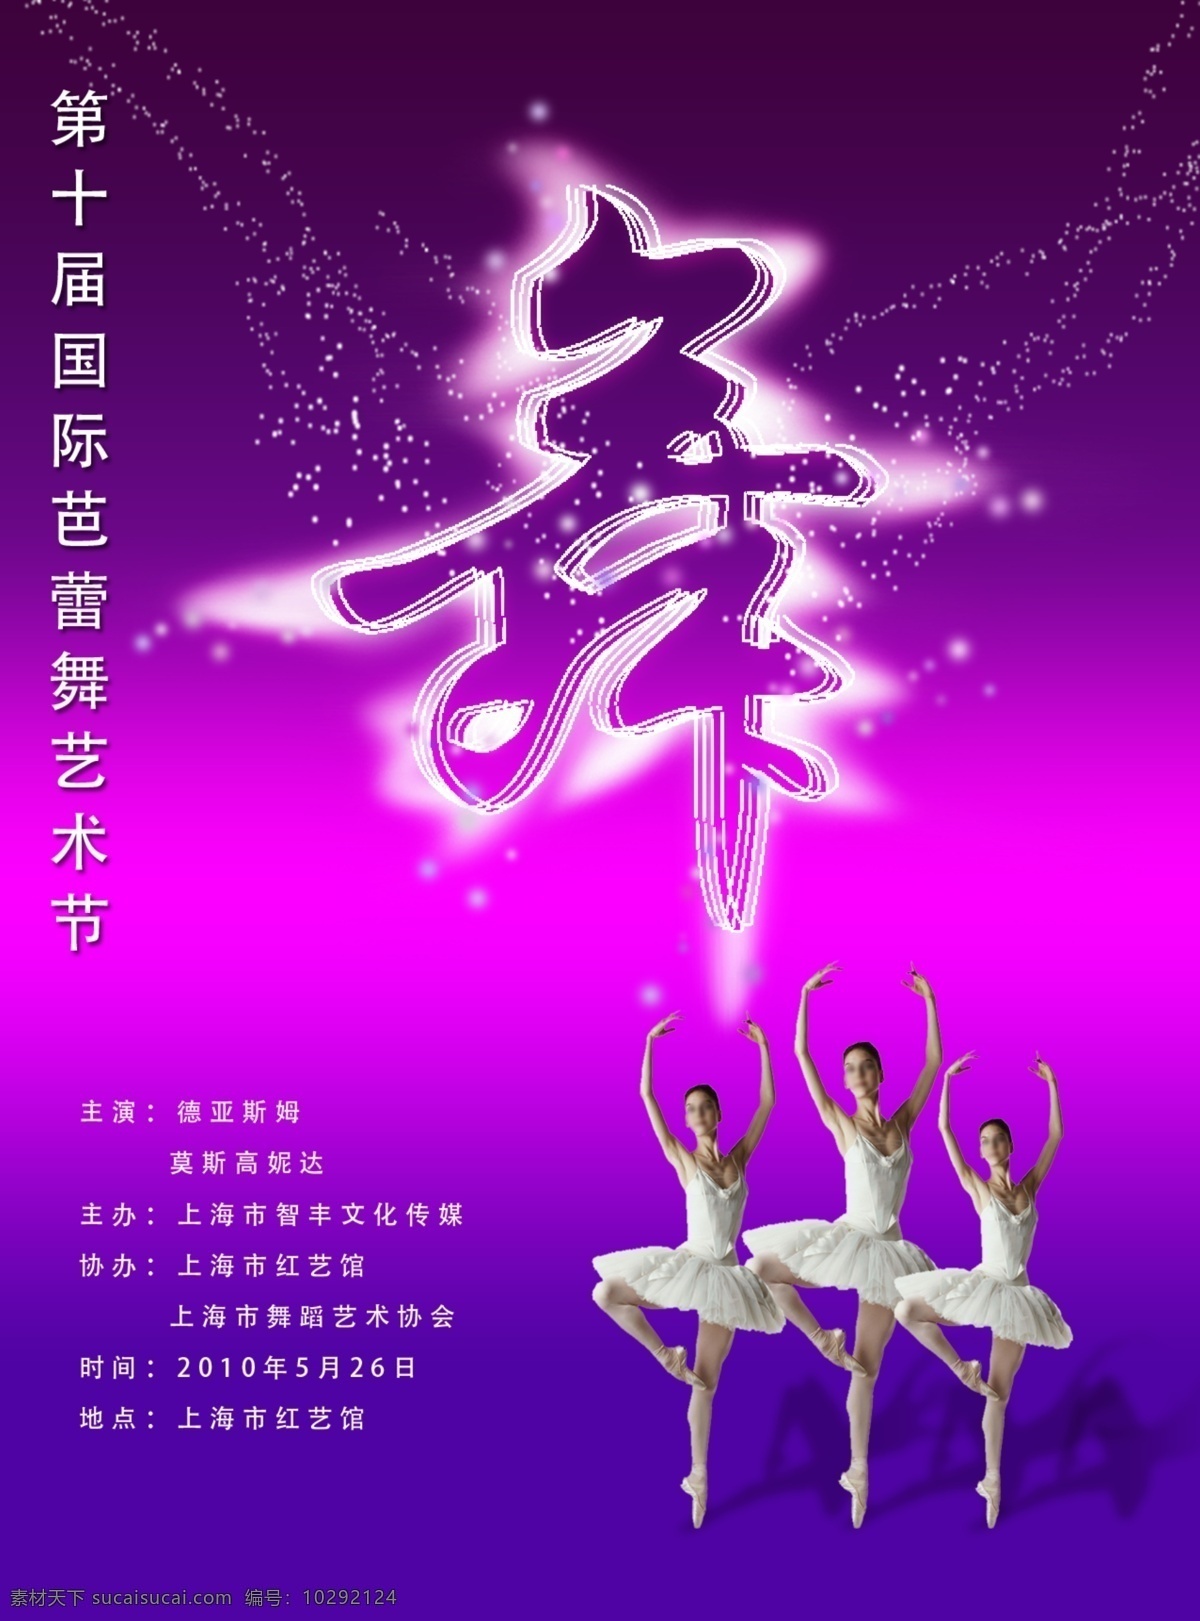 芭蕾舞 艺术节 海报 芭蕾 舞蹈 美女 圆点 星空 舞 广告设计模板 源文件